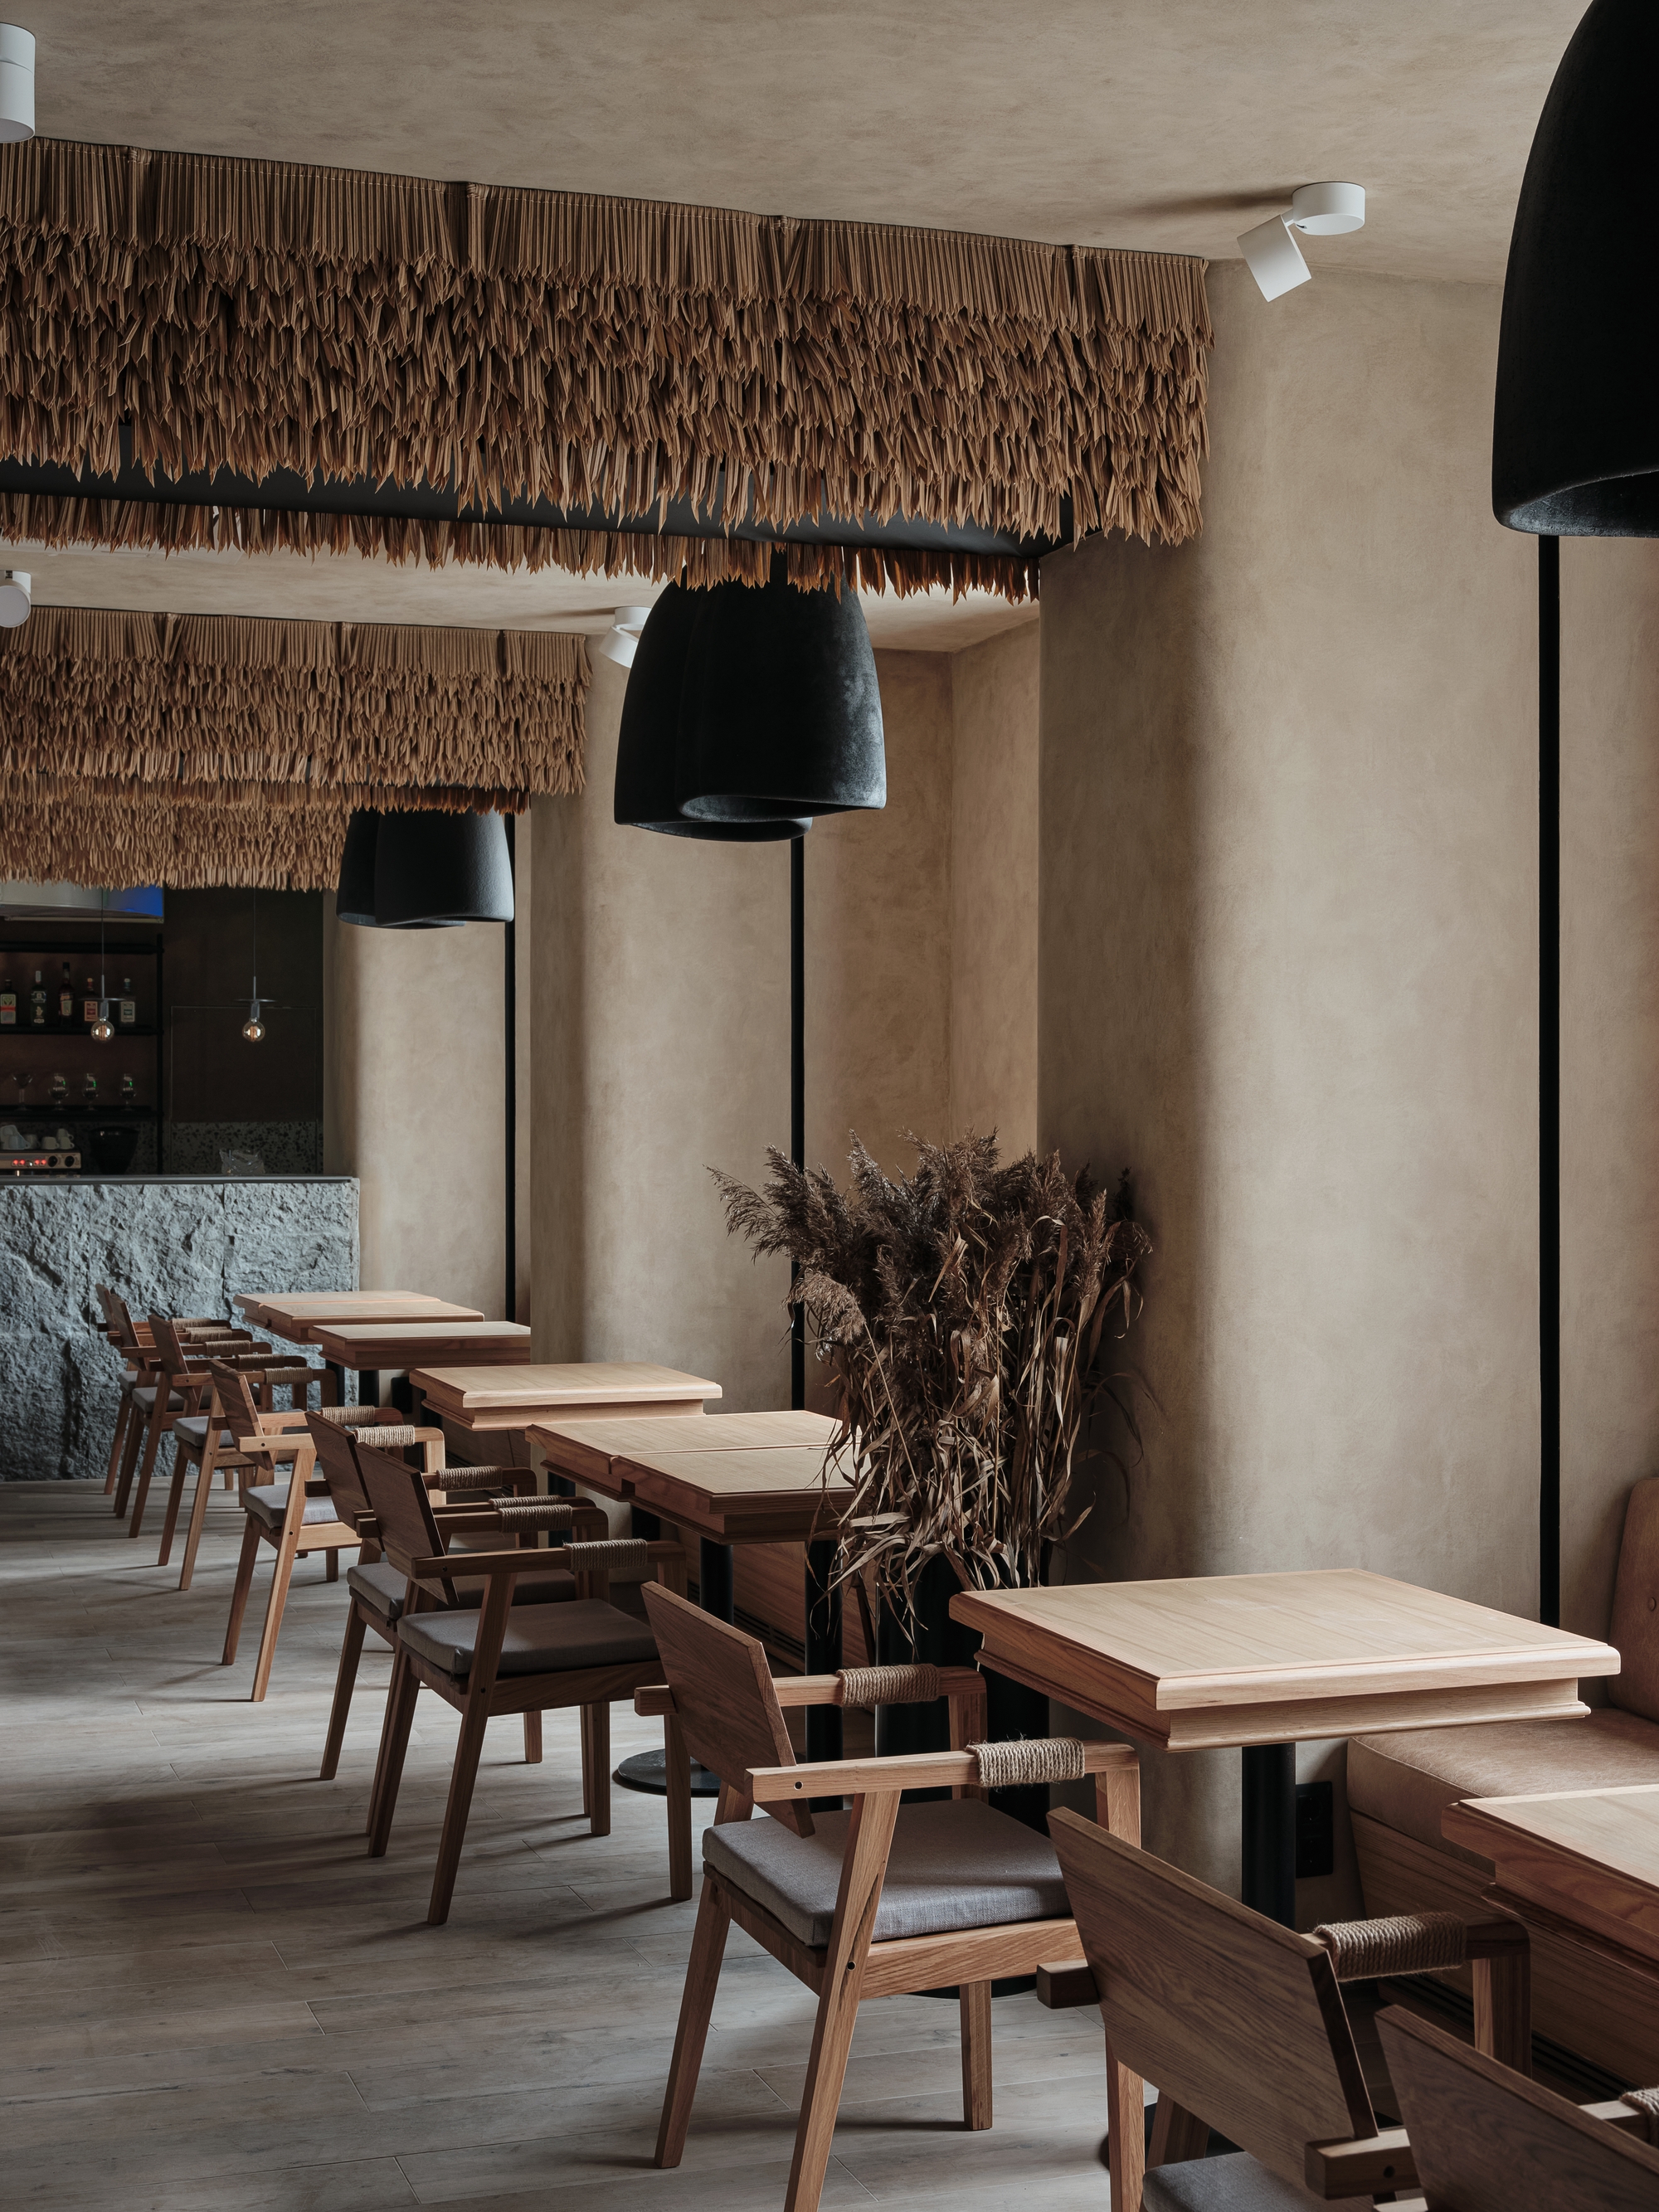 图片[7]|Fazenda餐厅|ART-Arrakis | 建筑室内设计的创新与灵感